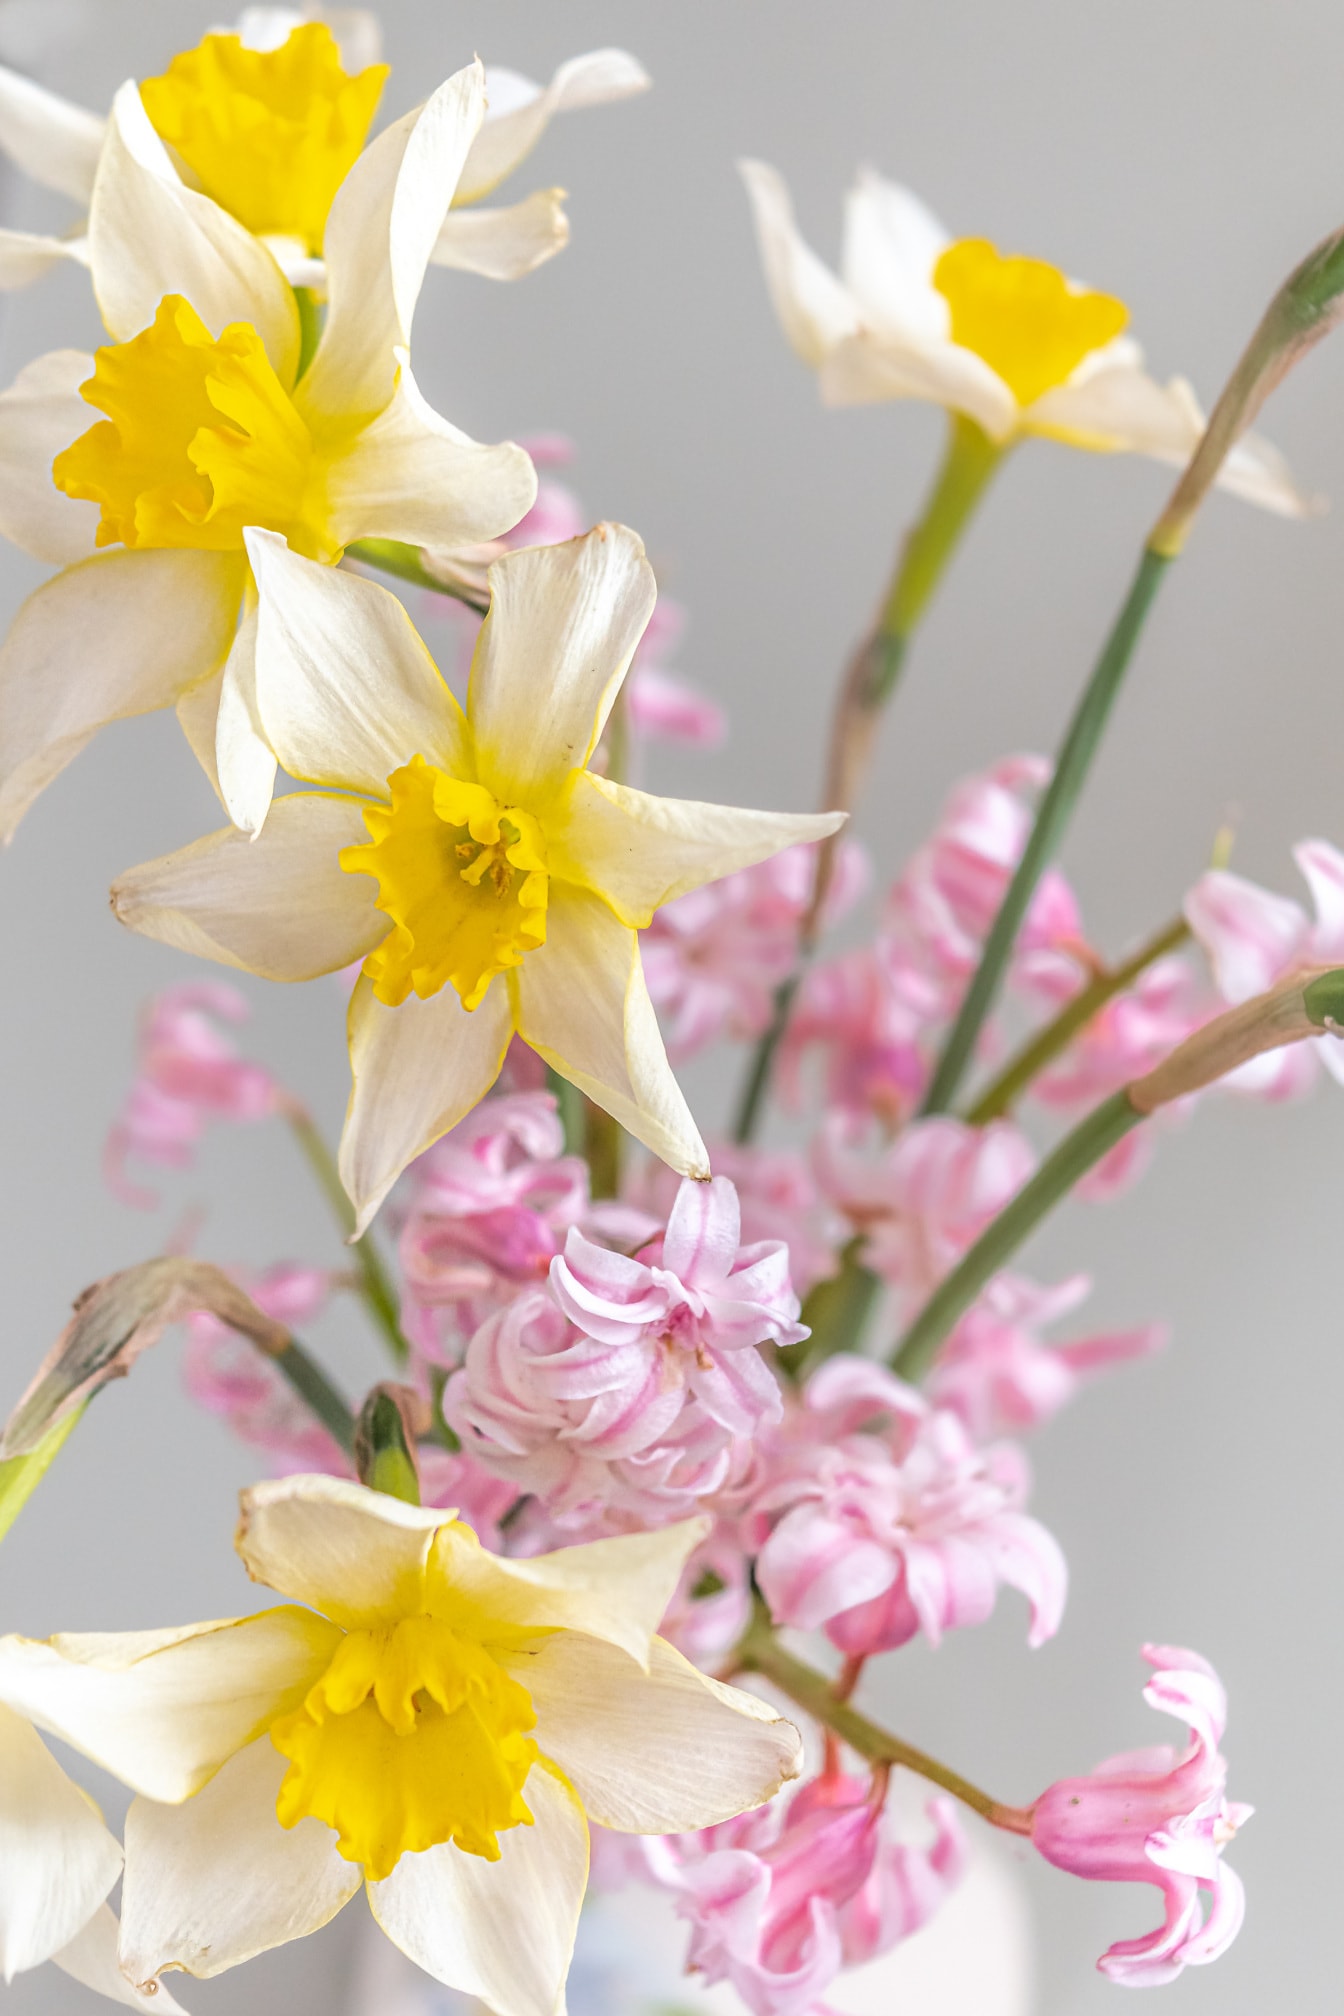 水仙花, 粉色, 风信子, 近距离, 花瓶, 开花, 束, 装饰